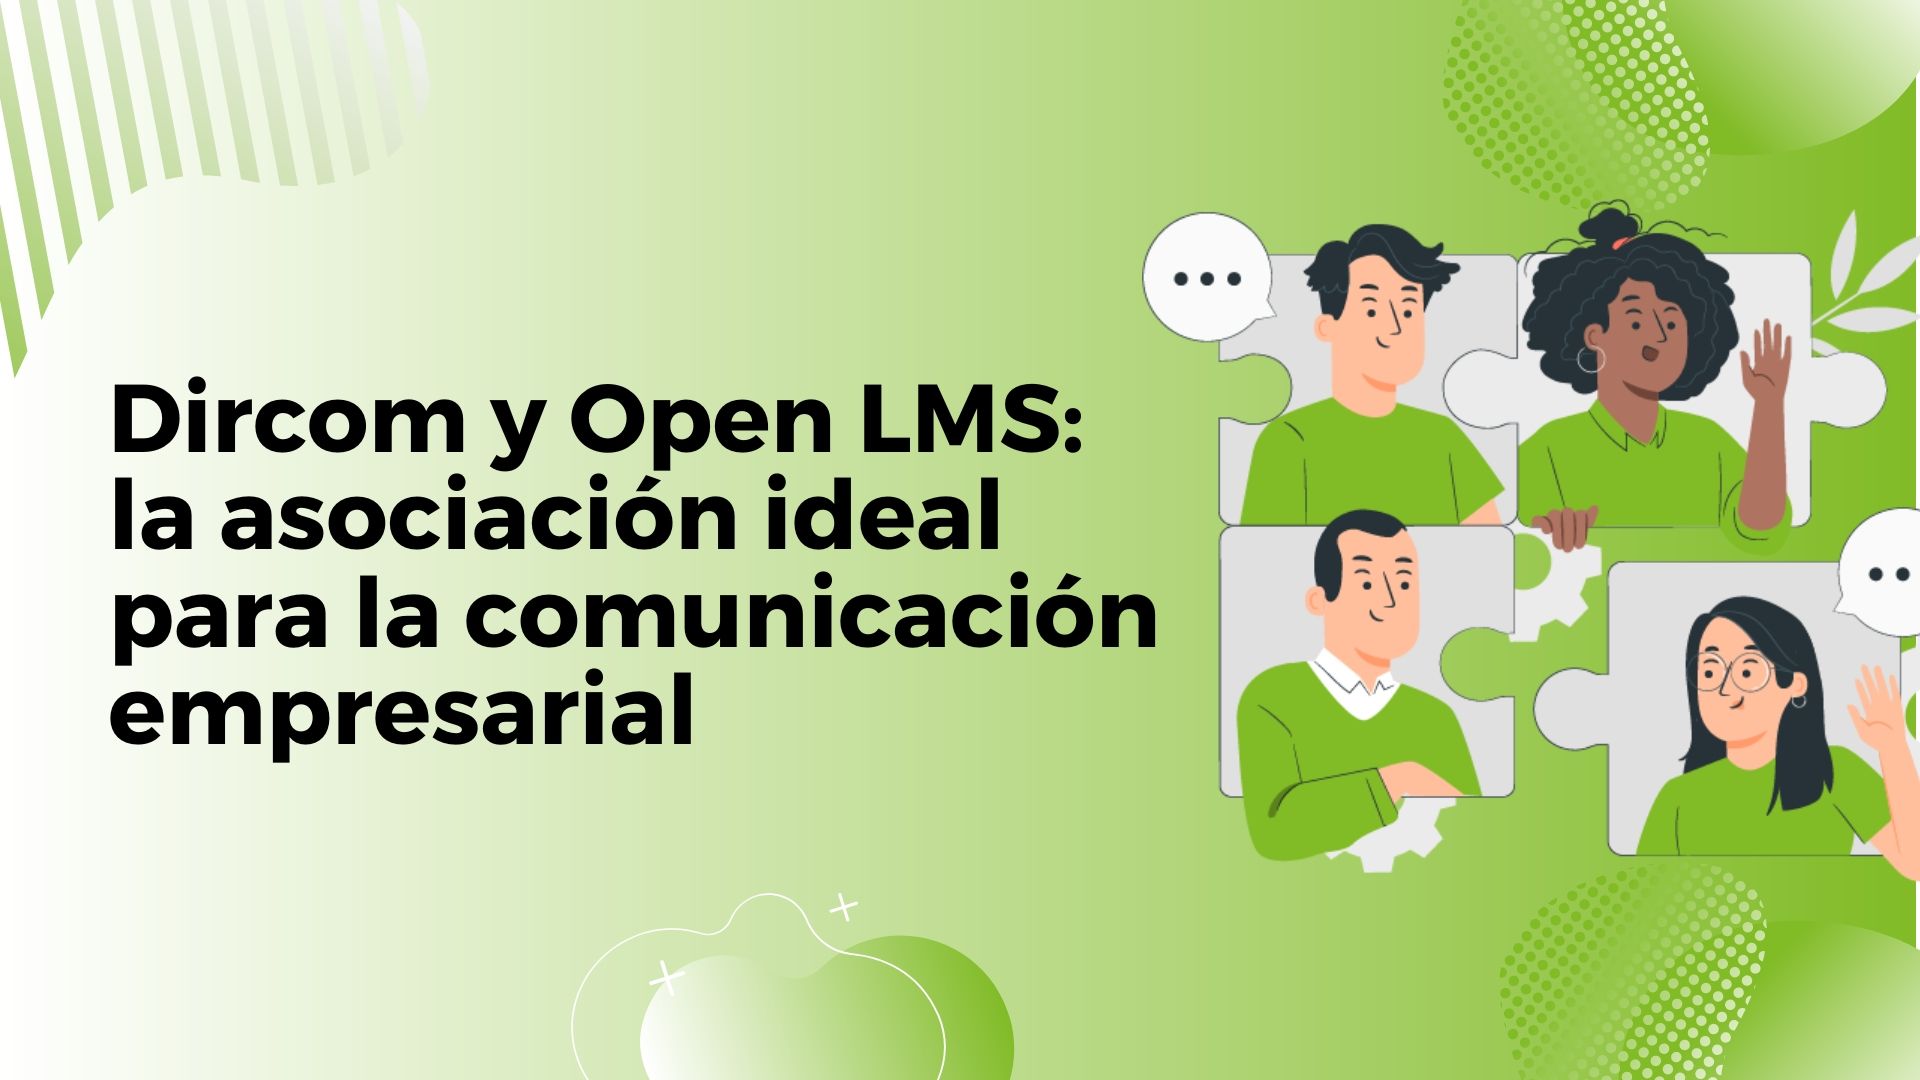 Dircom y Open LMS: la asociación ideal para la comunicación empresarial